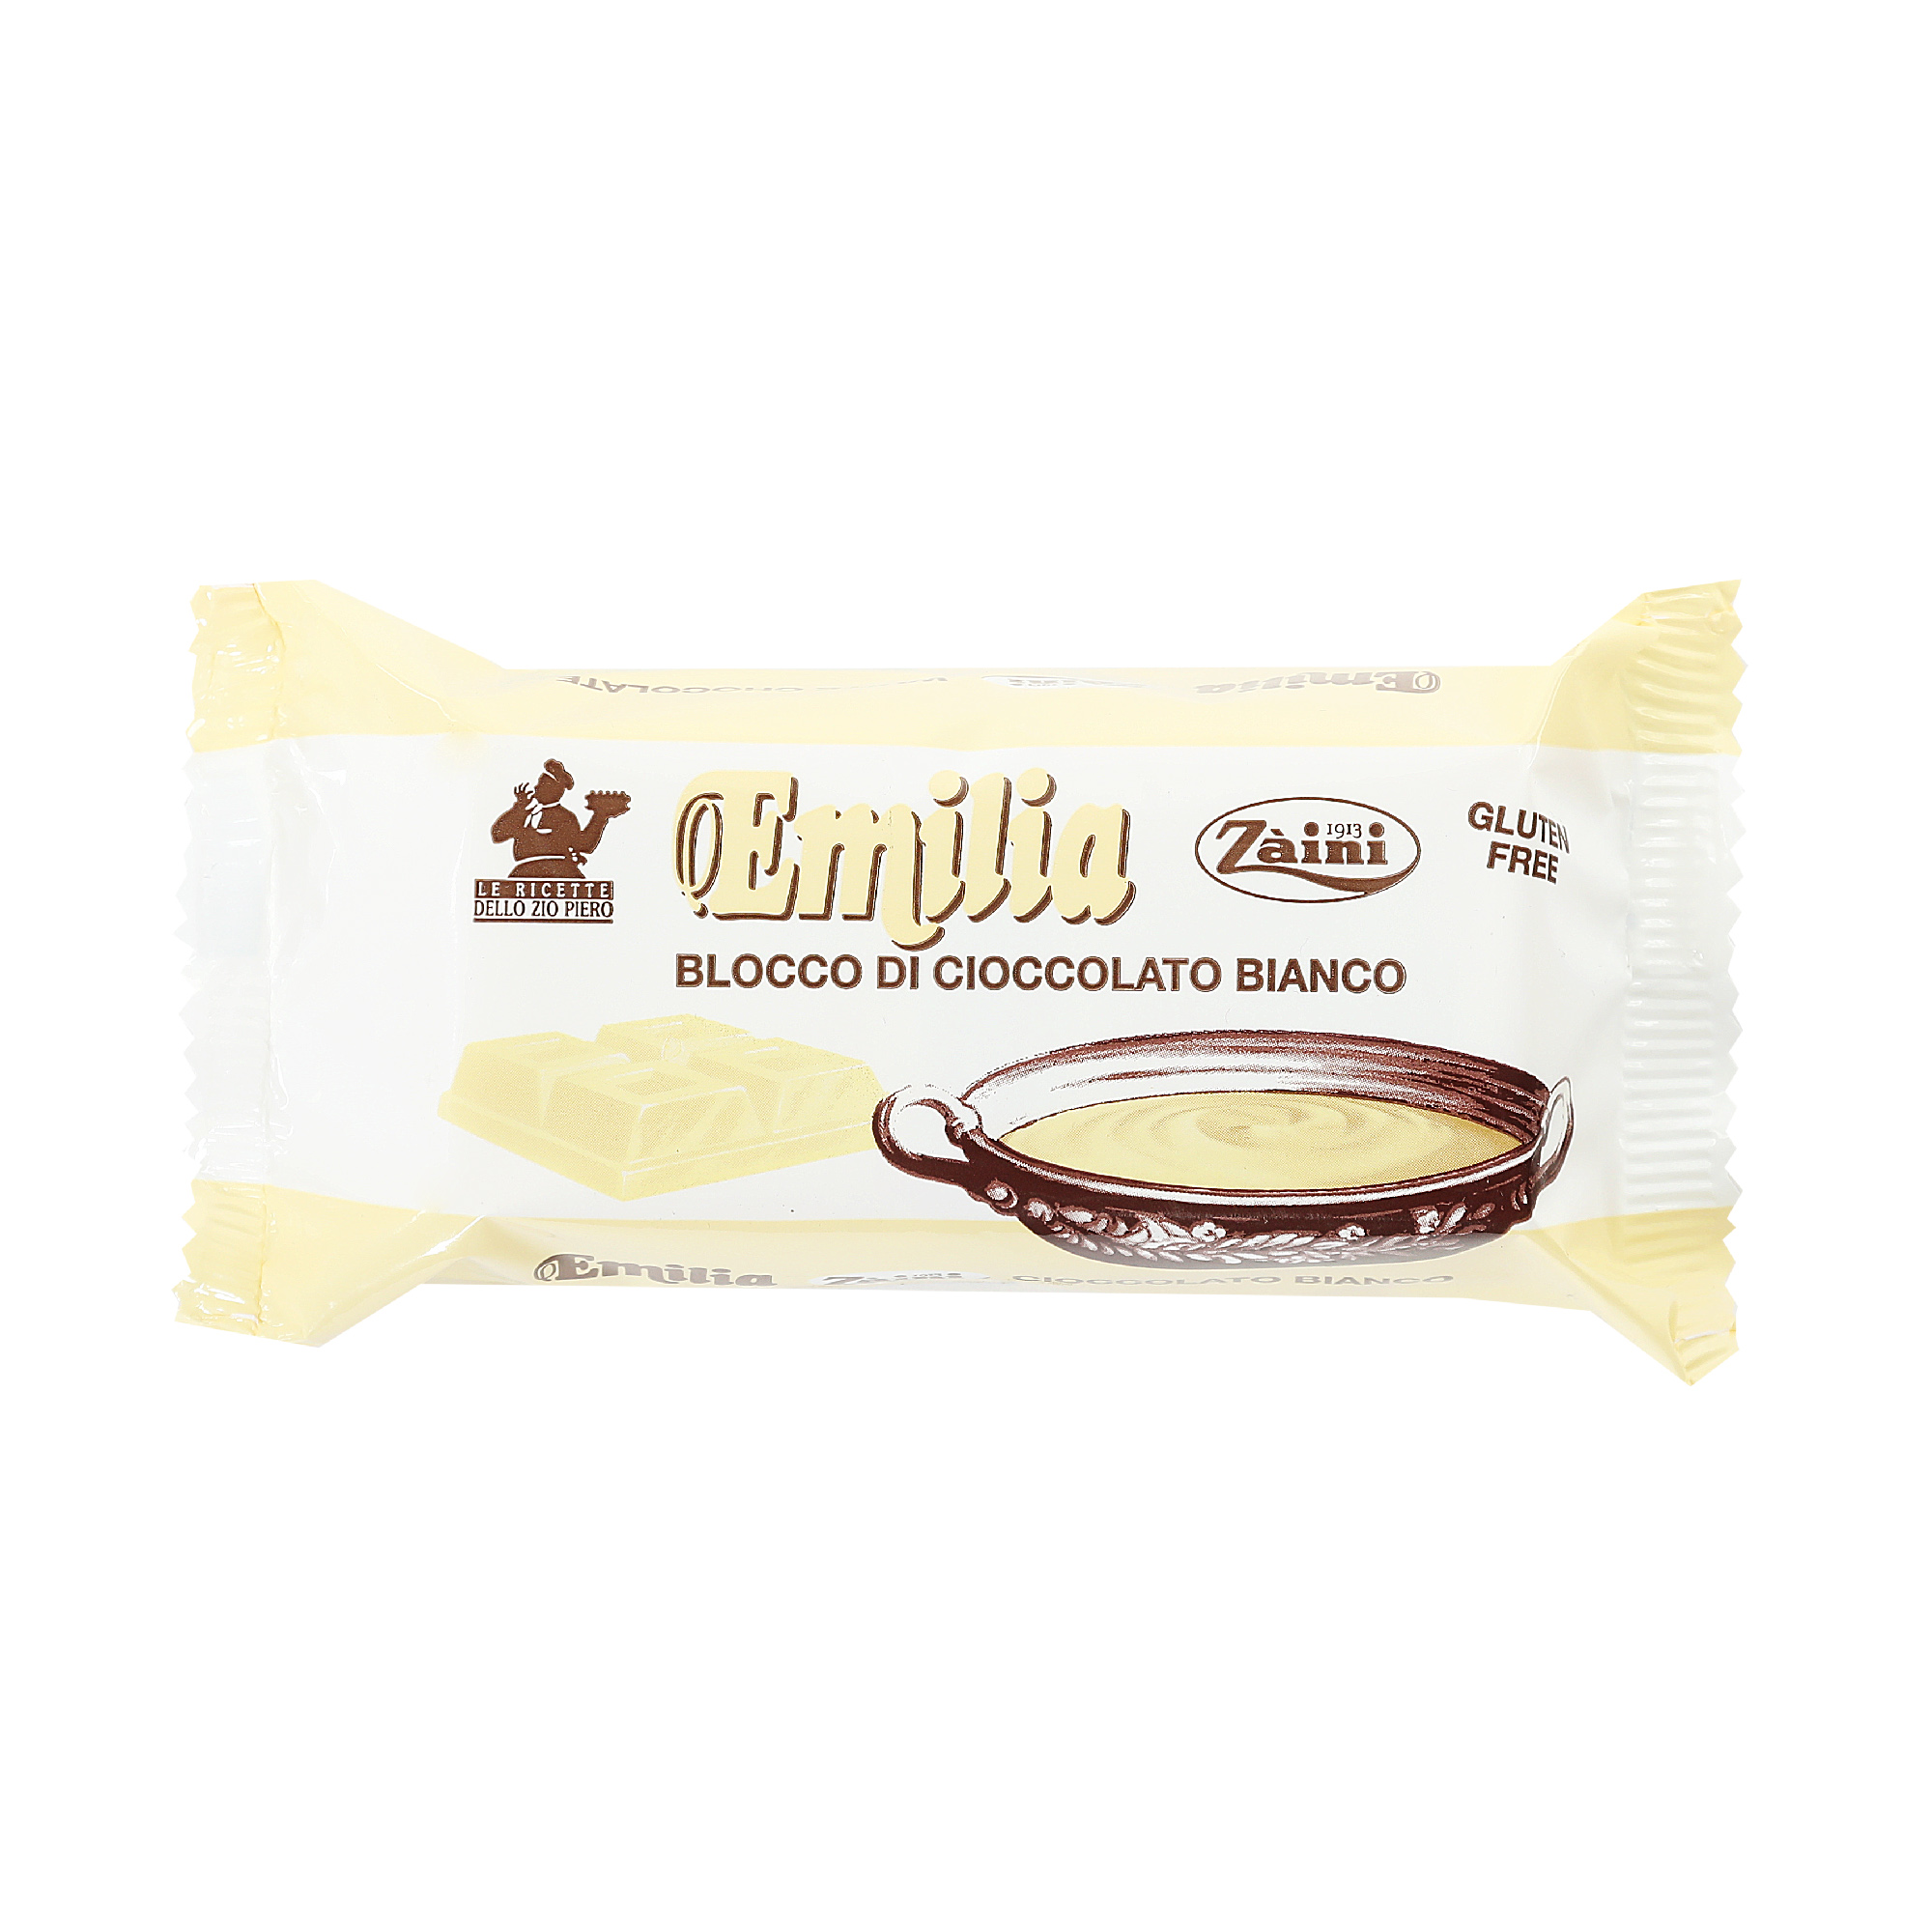 Шоколад белый Zaini Emilia, 200 г italwax воск горячий пленочный в гранулах для депиляции белый шоколад 500